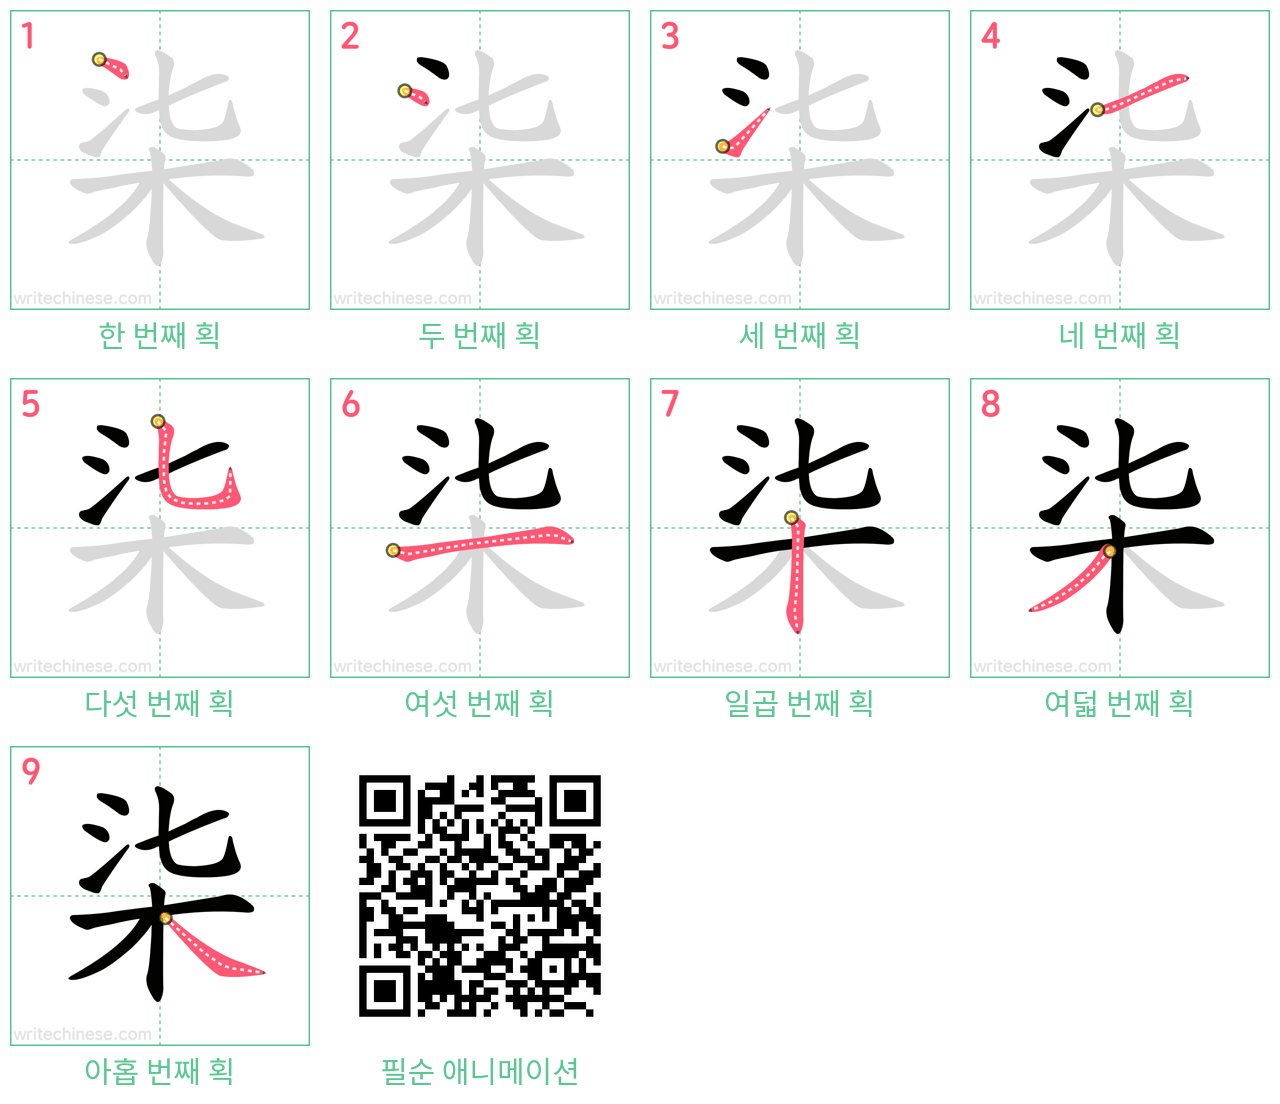 柒 step-by-step stroke order diagrams